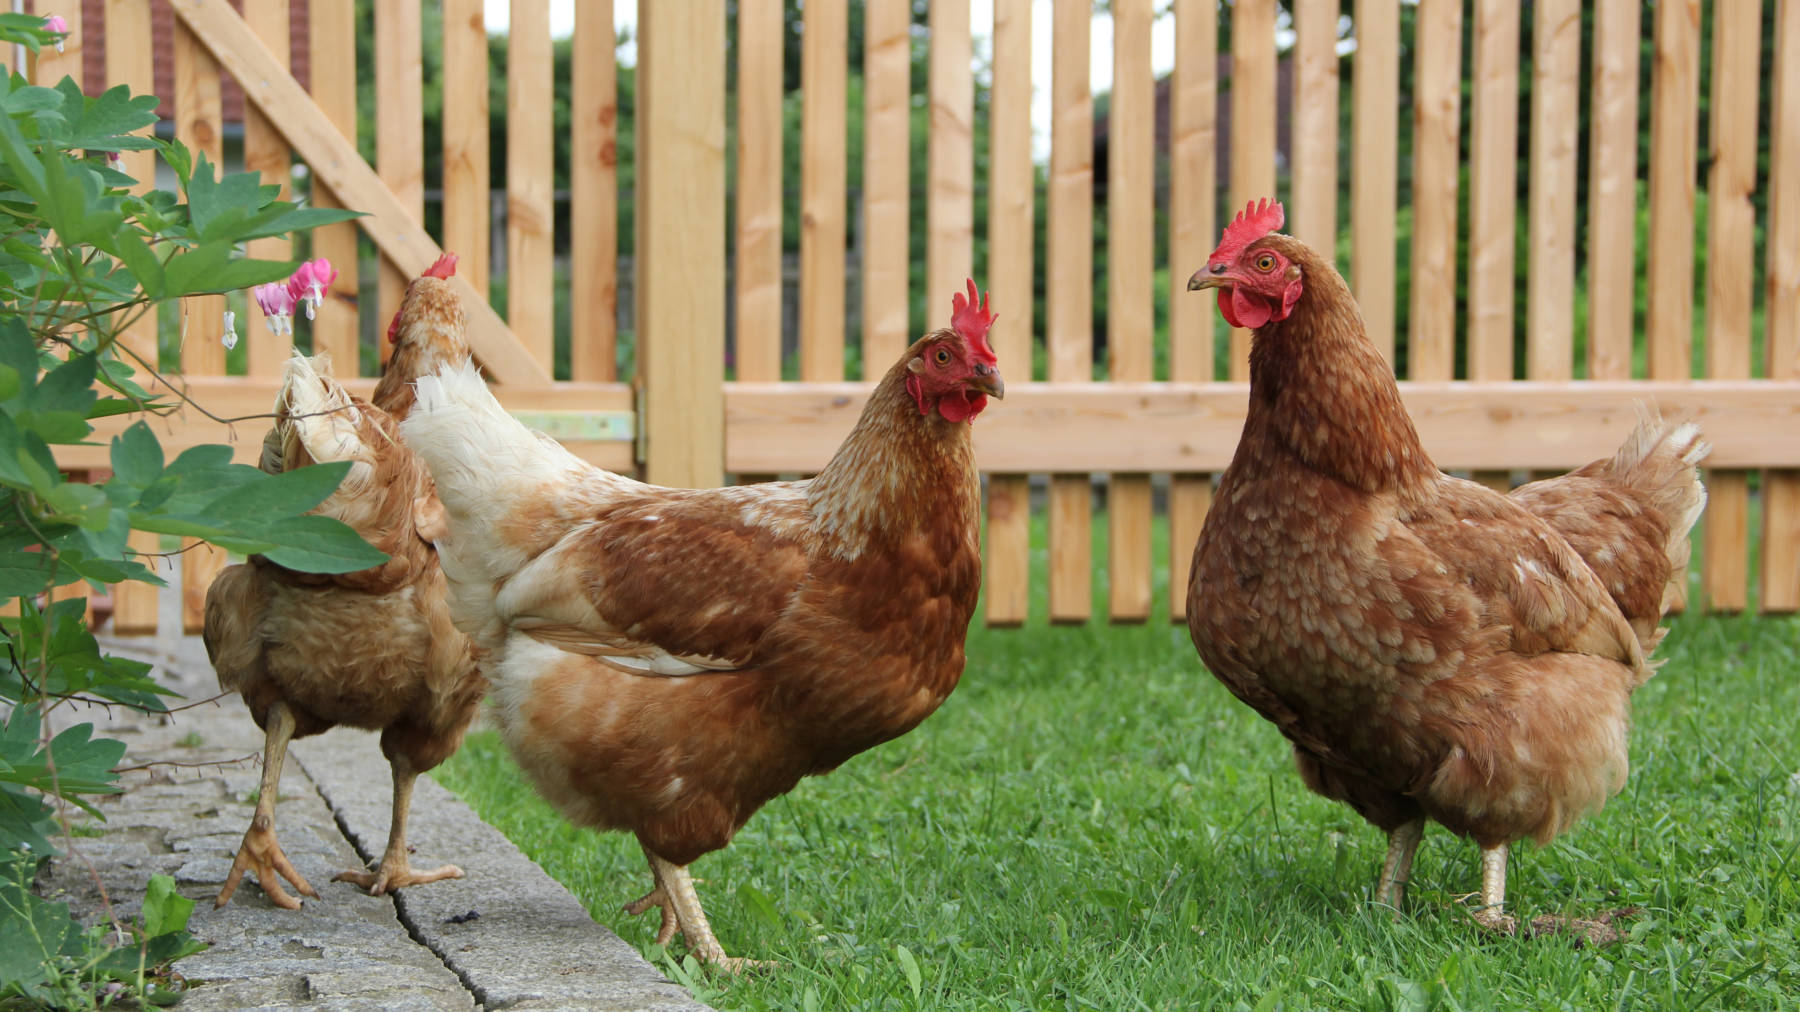 Hühner Halt
en im Garten - Hühner Haltung - Alle Infos über Hühner